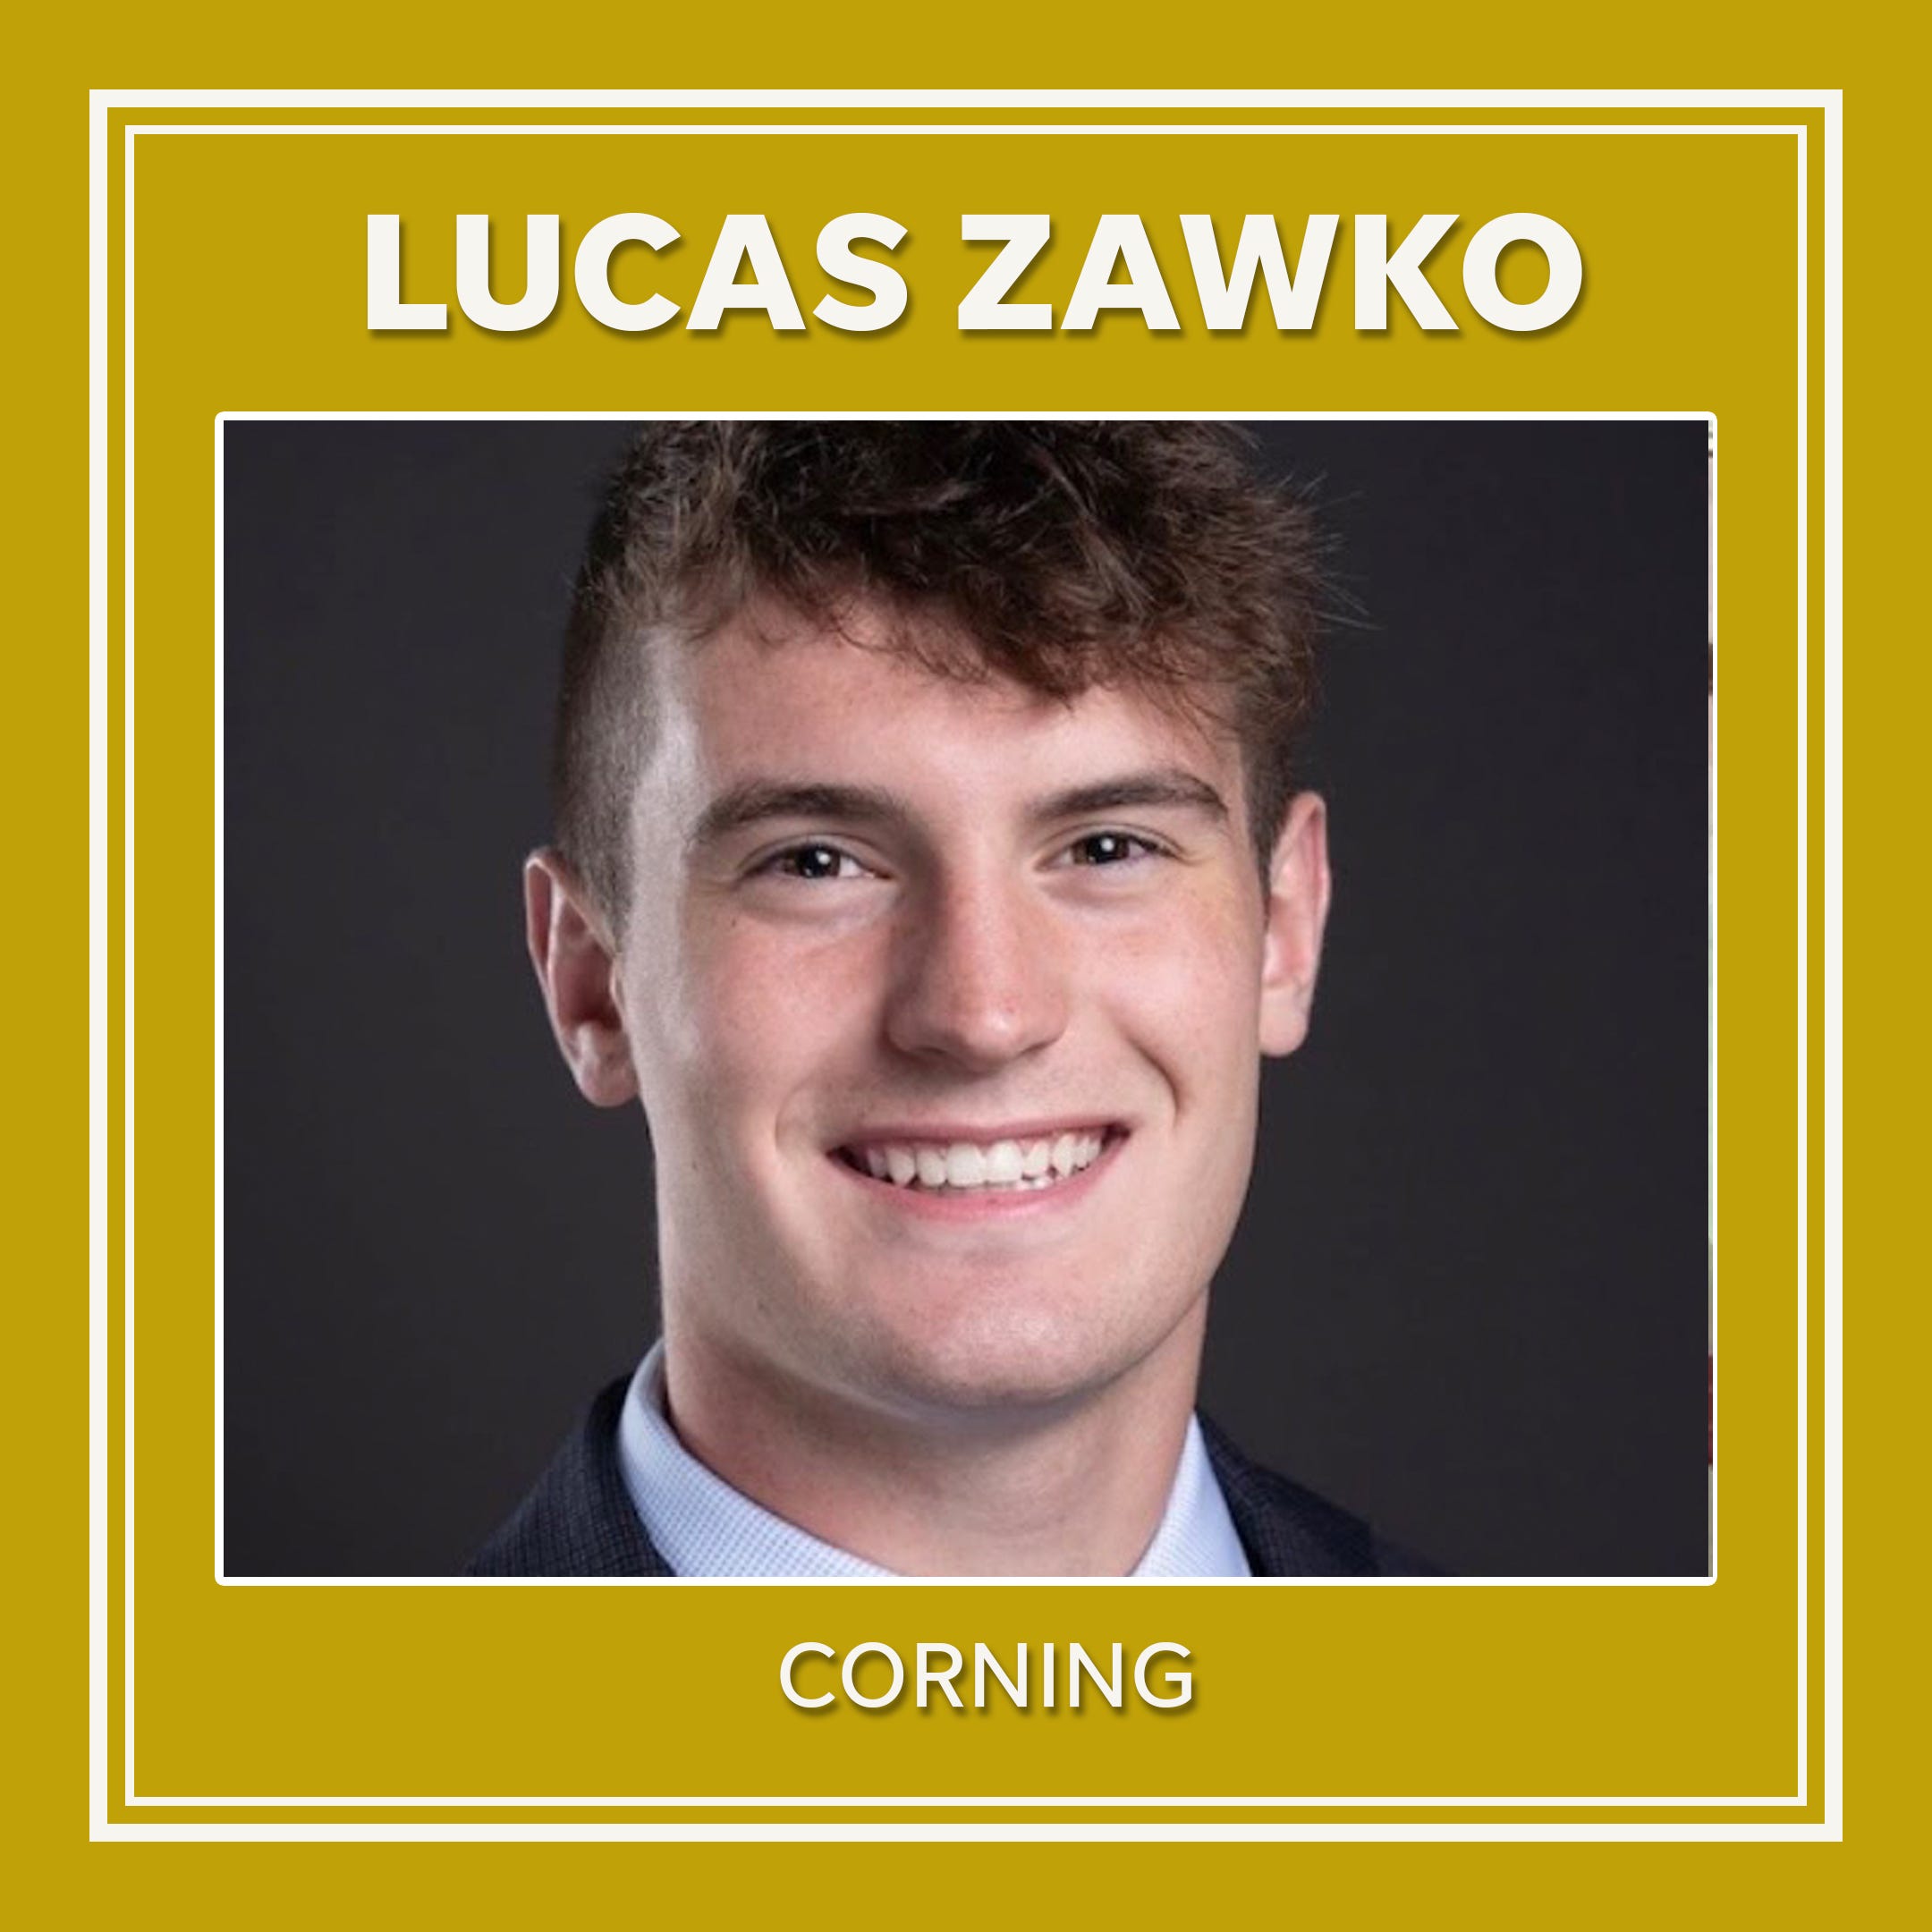 Lucas Zawko